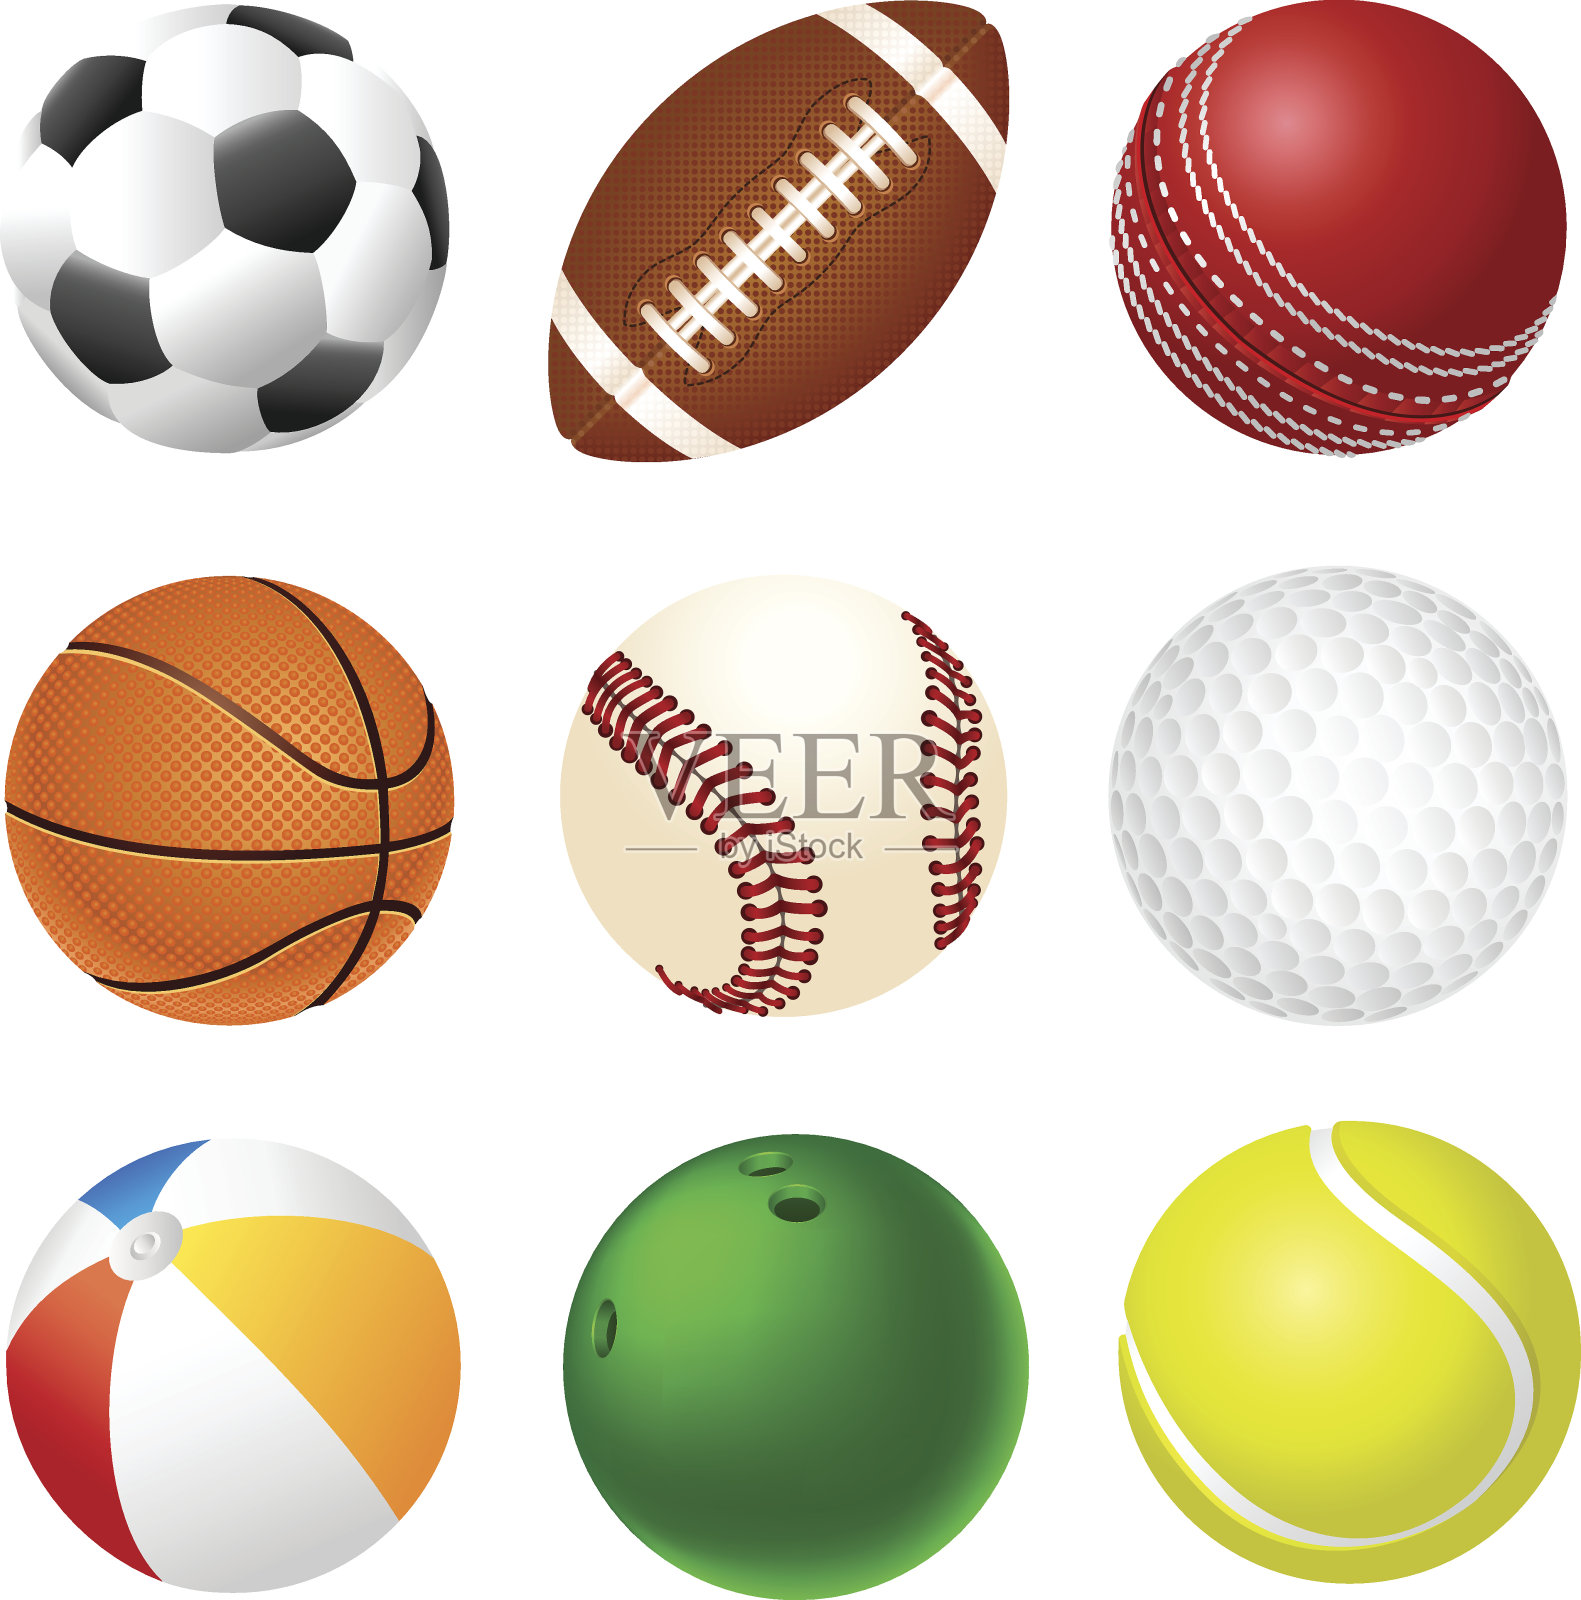 白色背景上一组3x3的不同运动球插画图片素材